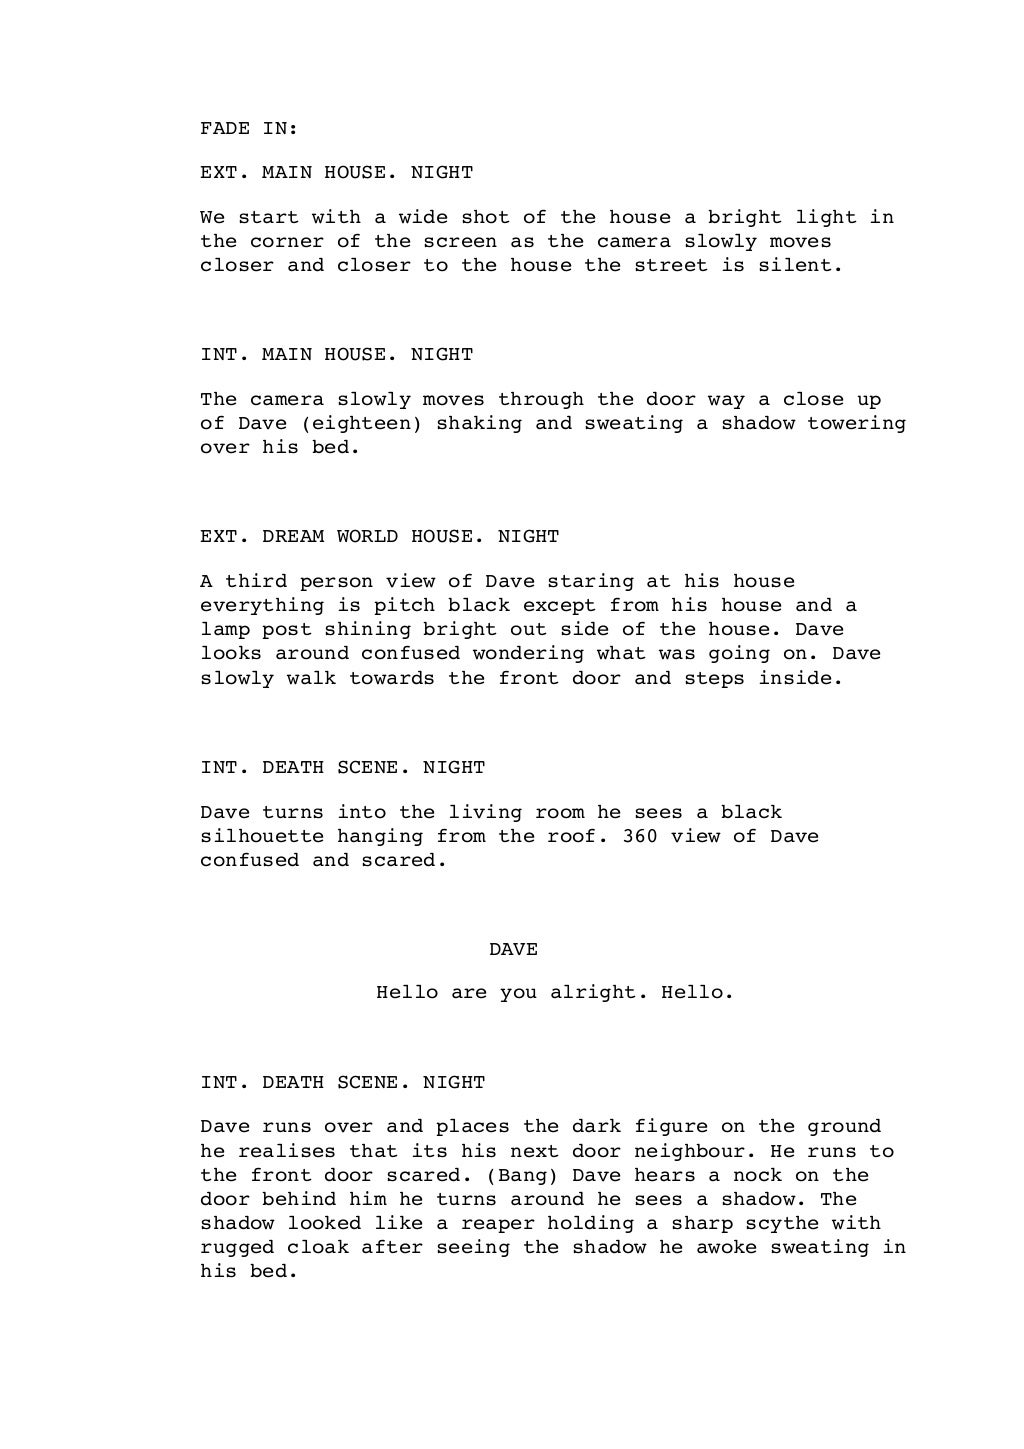 short-film-script-pdf